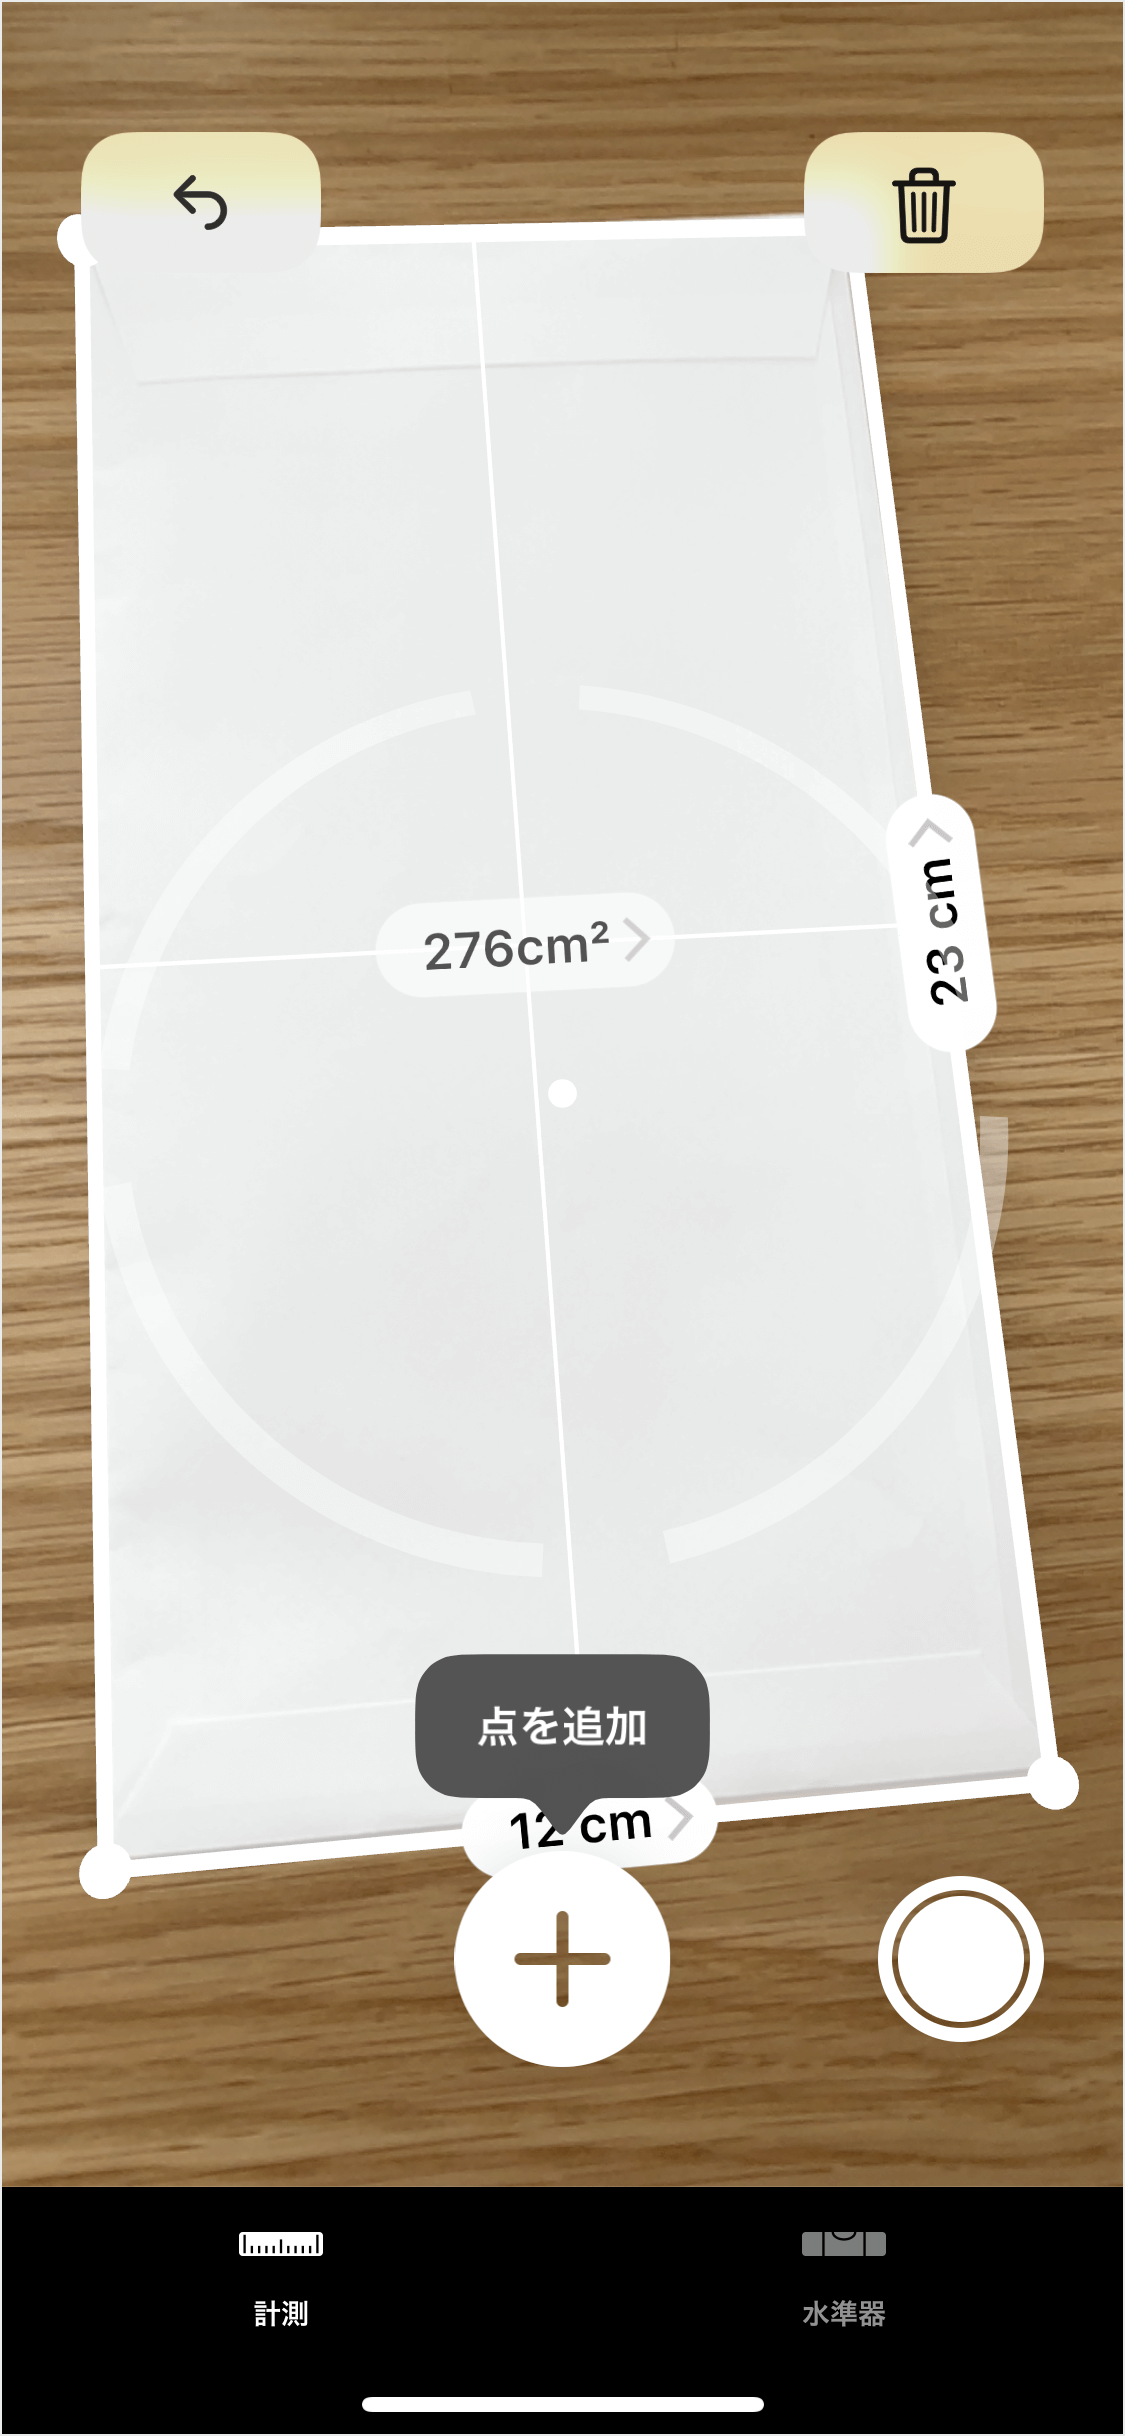 Iphone Ipadアプリ 計測 長さ 面積 角度を測定 Pc設定のカルマ